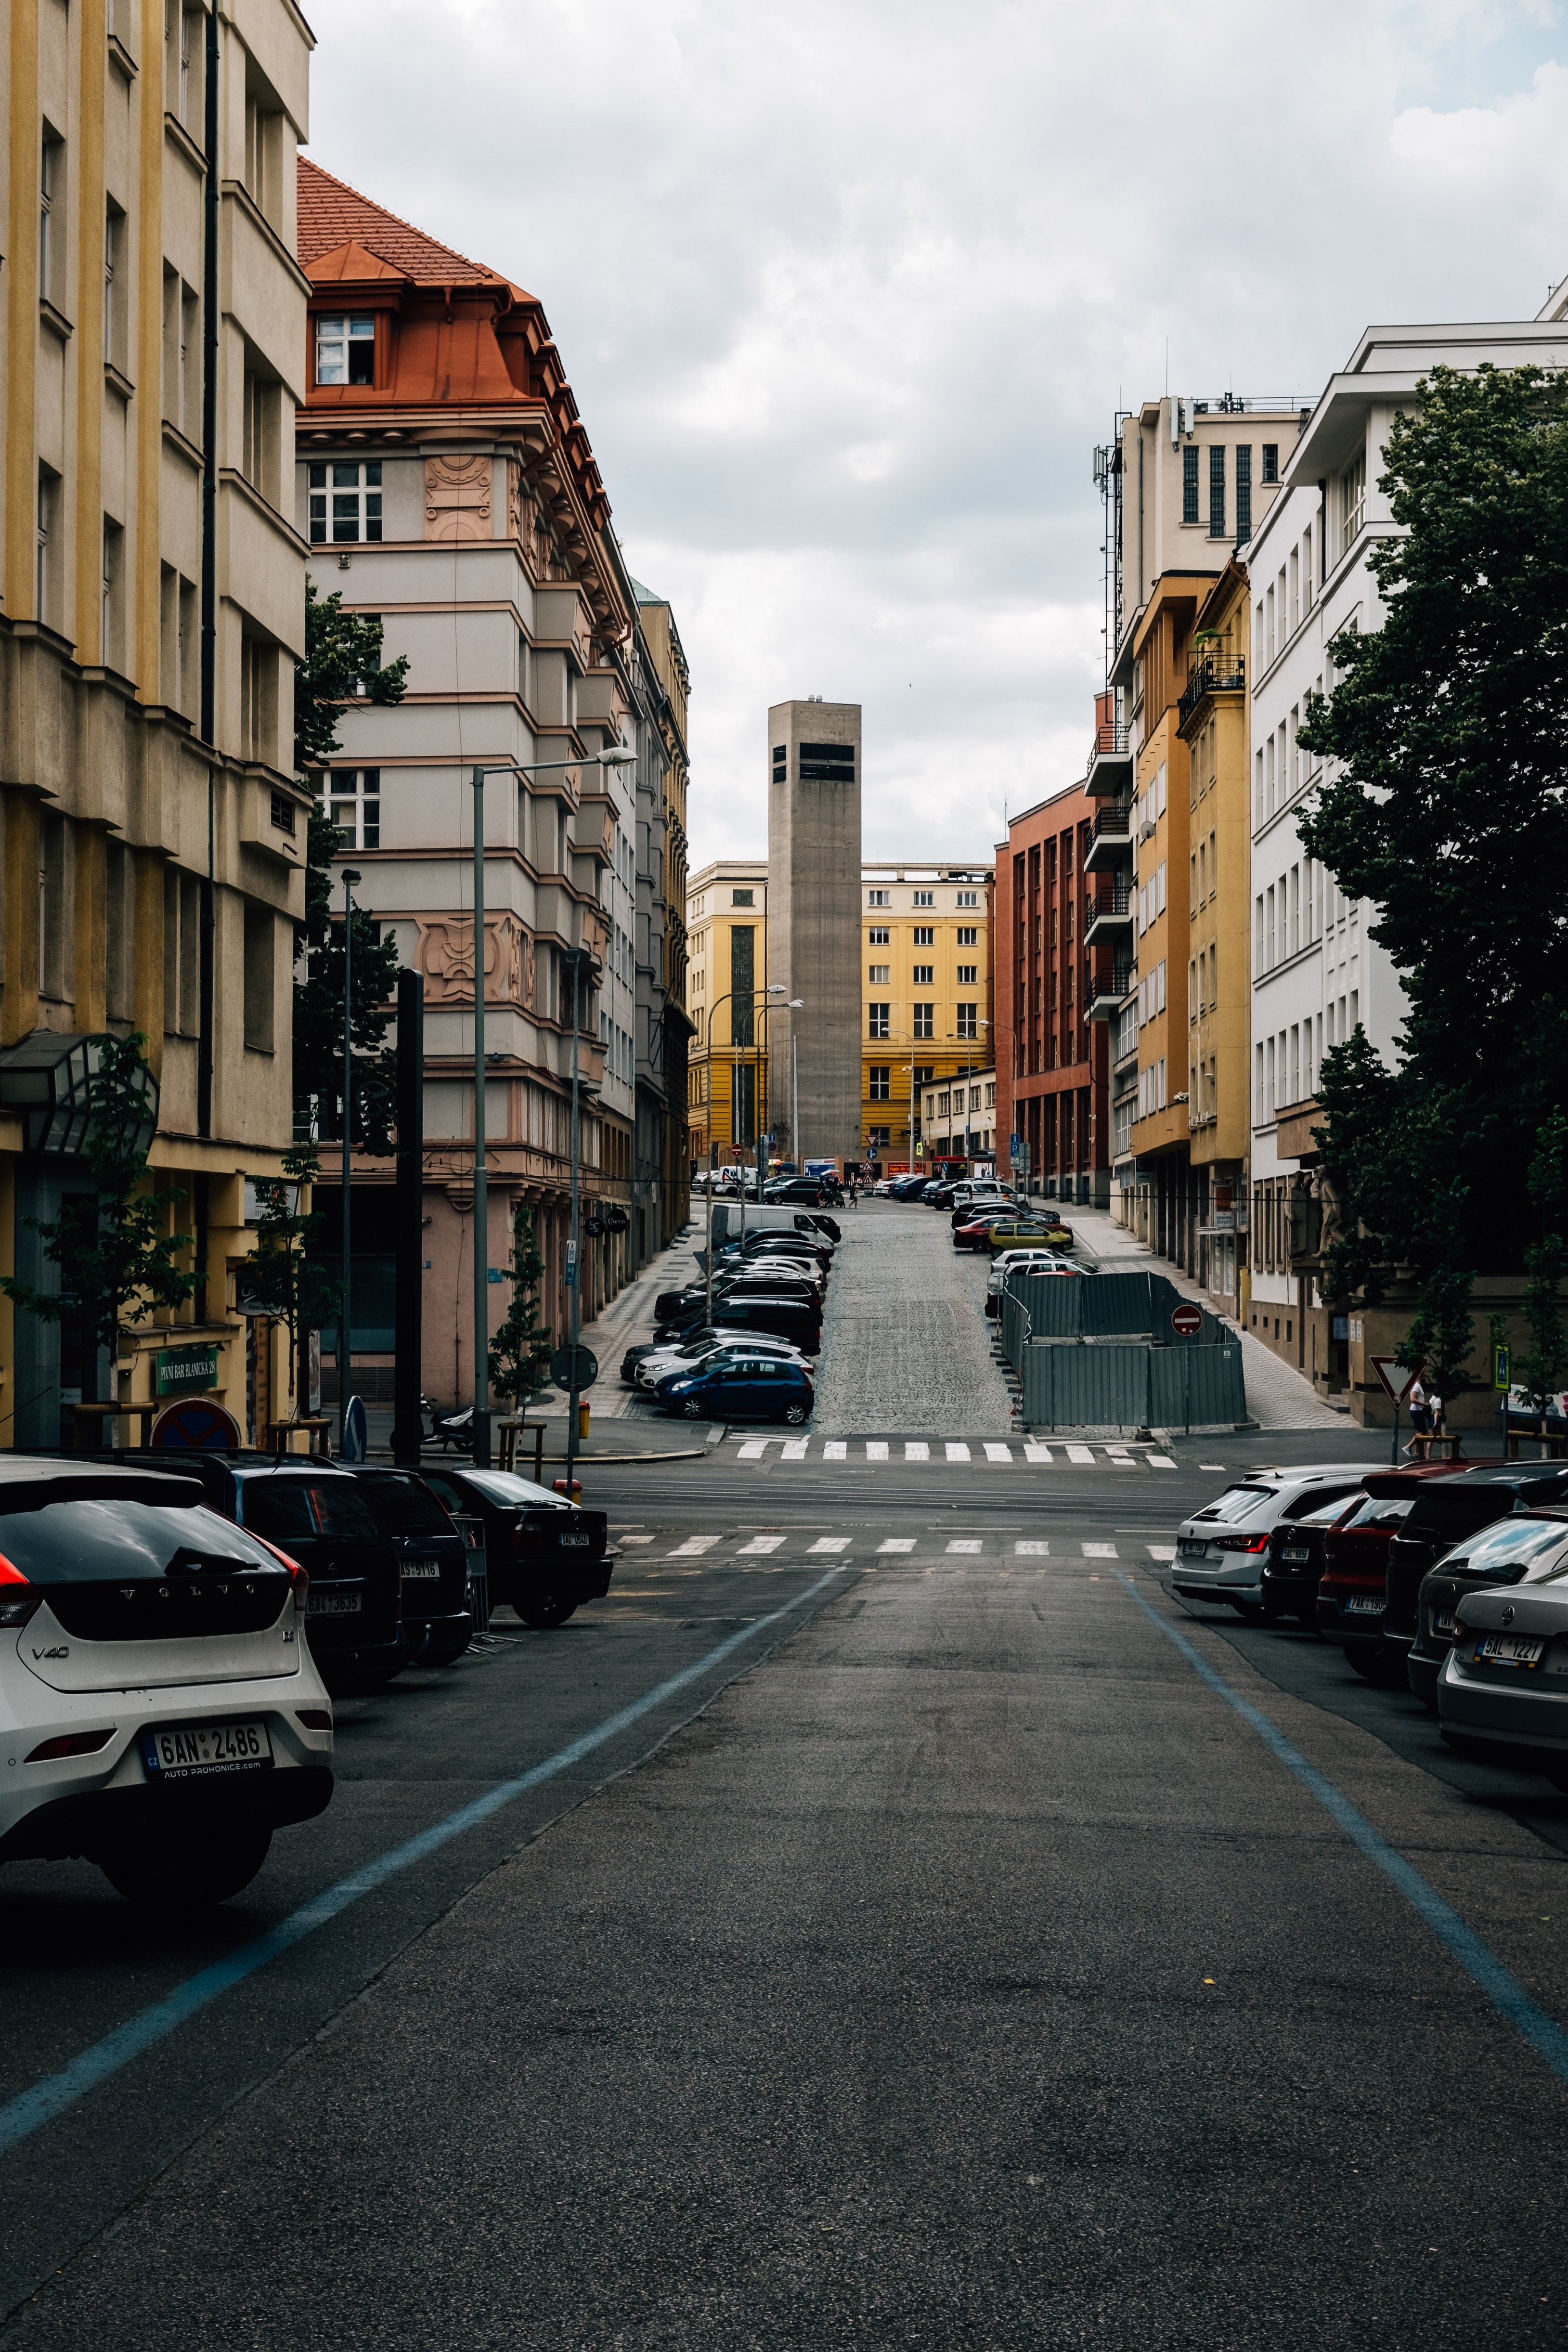 Calle tranquila de la ciudad bordeada de coloridos edificios y automóviles estacionados Foto 